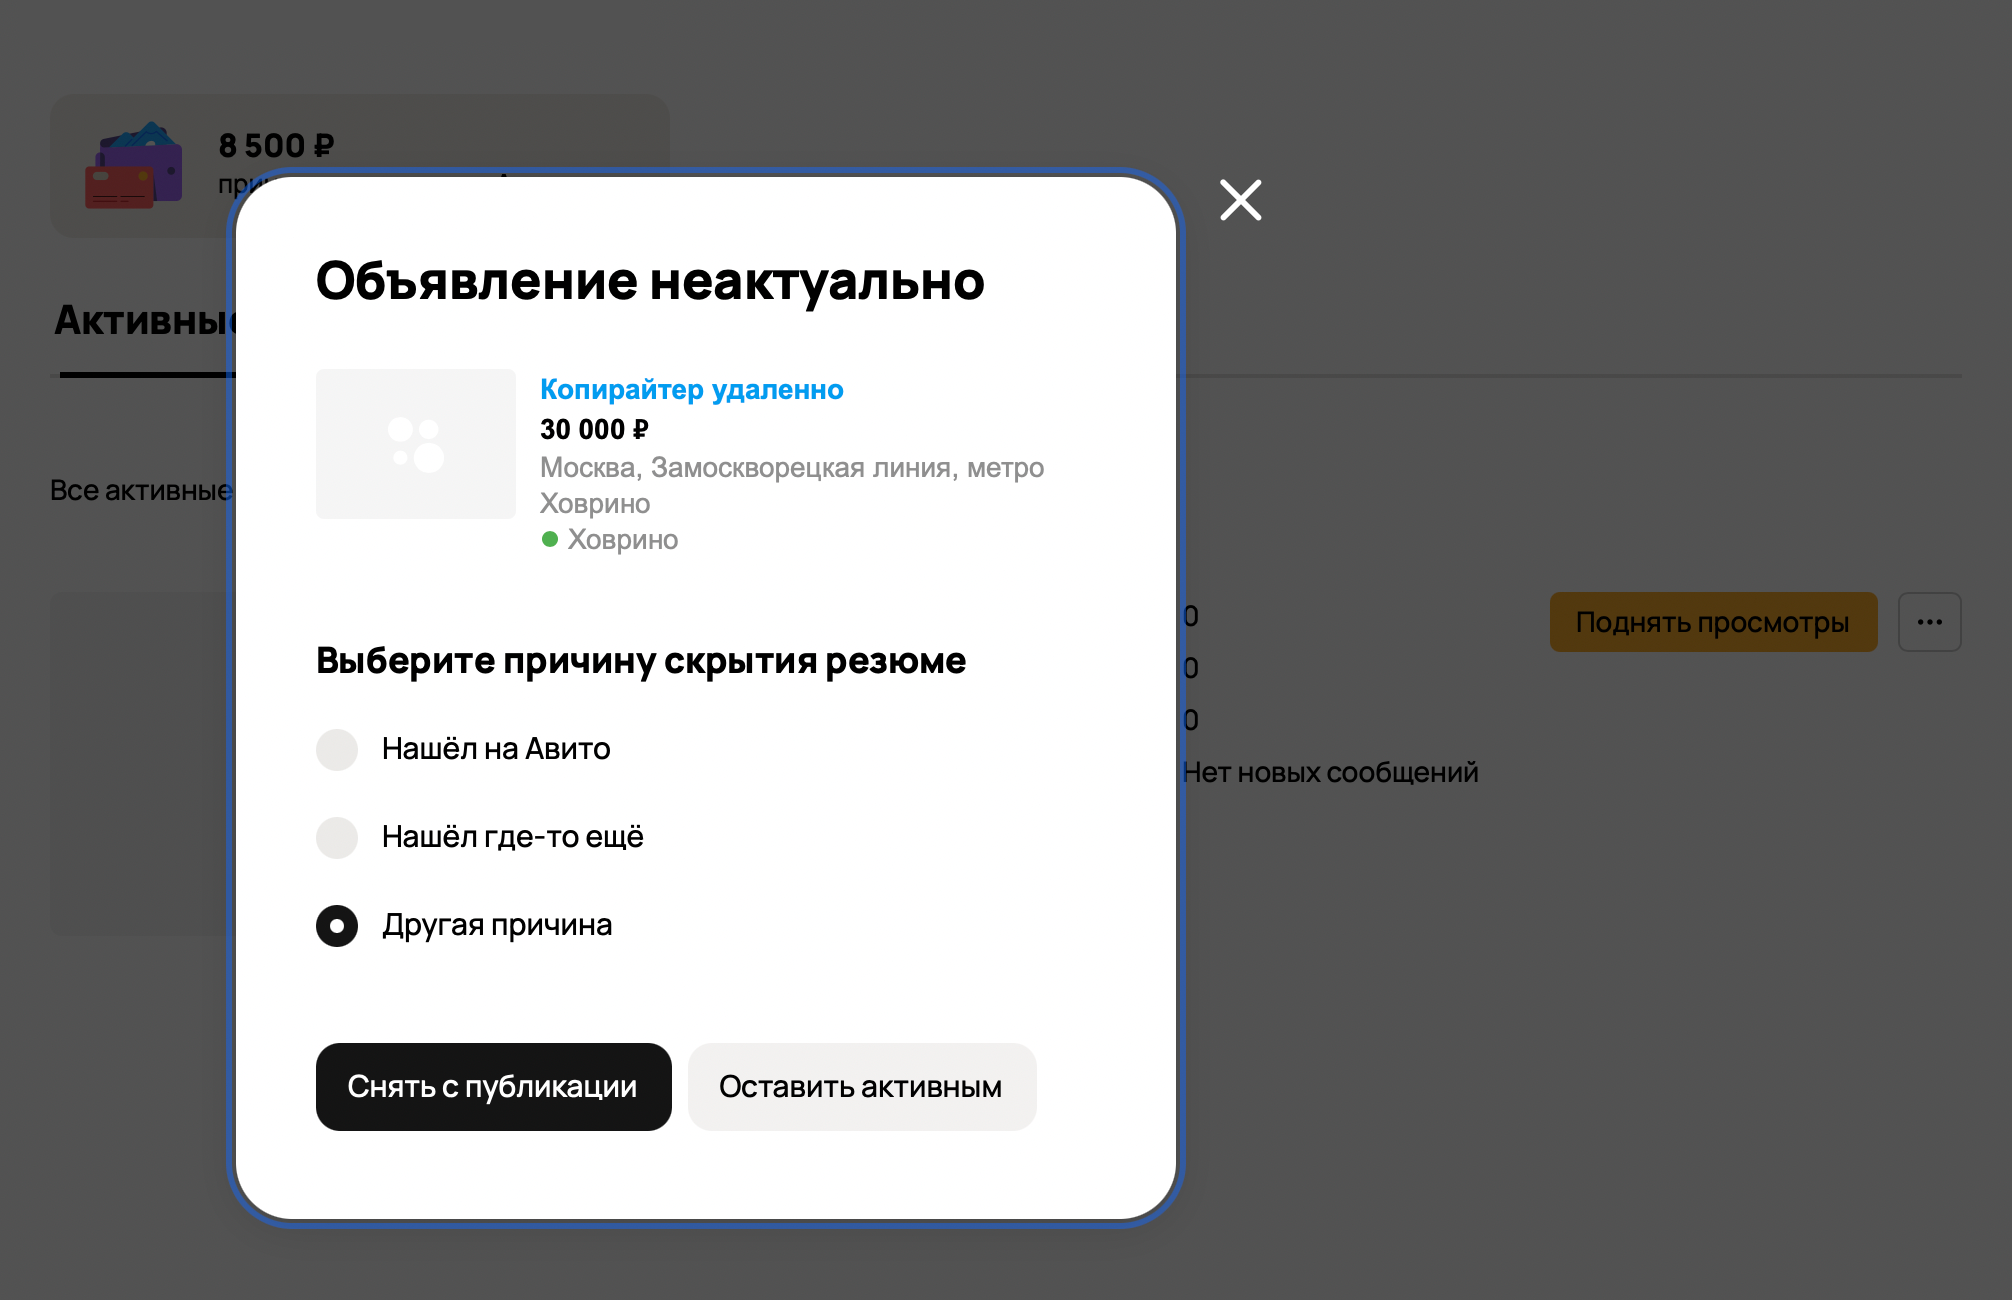 Инструкция, как удалить резюме на «Авито». Источник: avito.ru